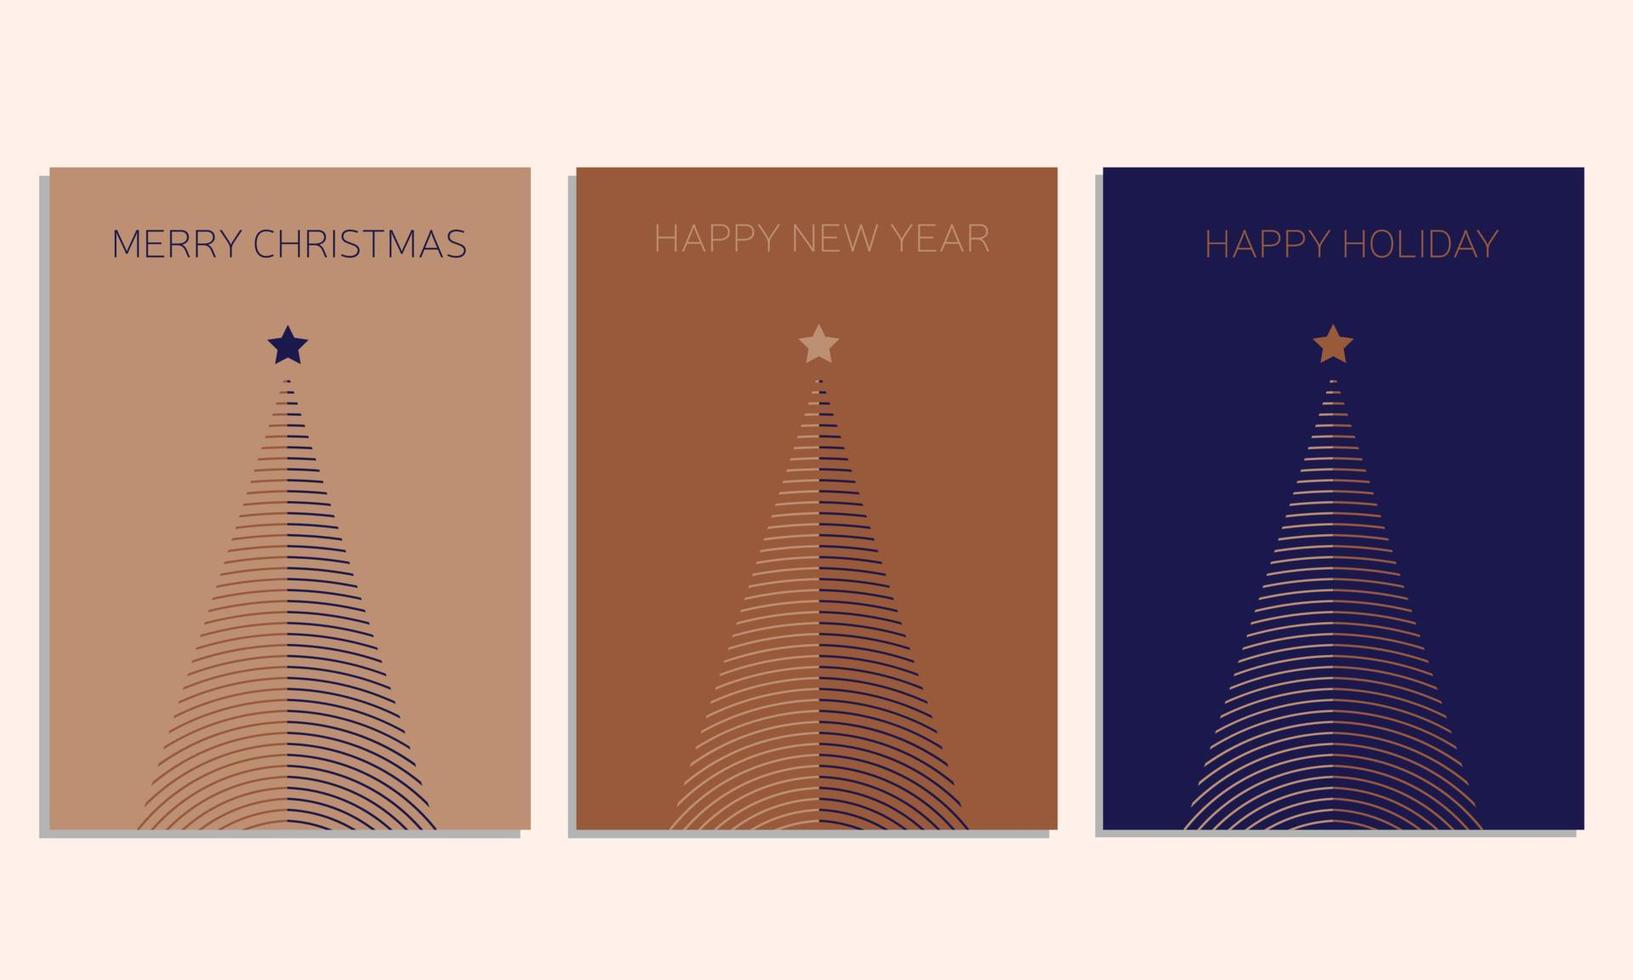 tarjetas navideñas corporativas modernas con árbol de navidad, pájaros, marco floral ornamentado, fondo y espacio para copiar. plantillas artísticas universales. vector